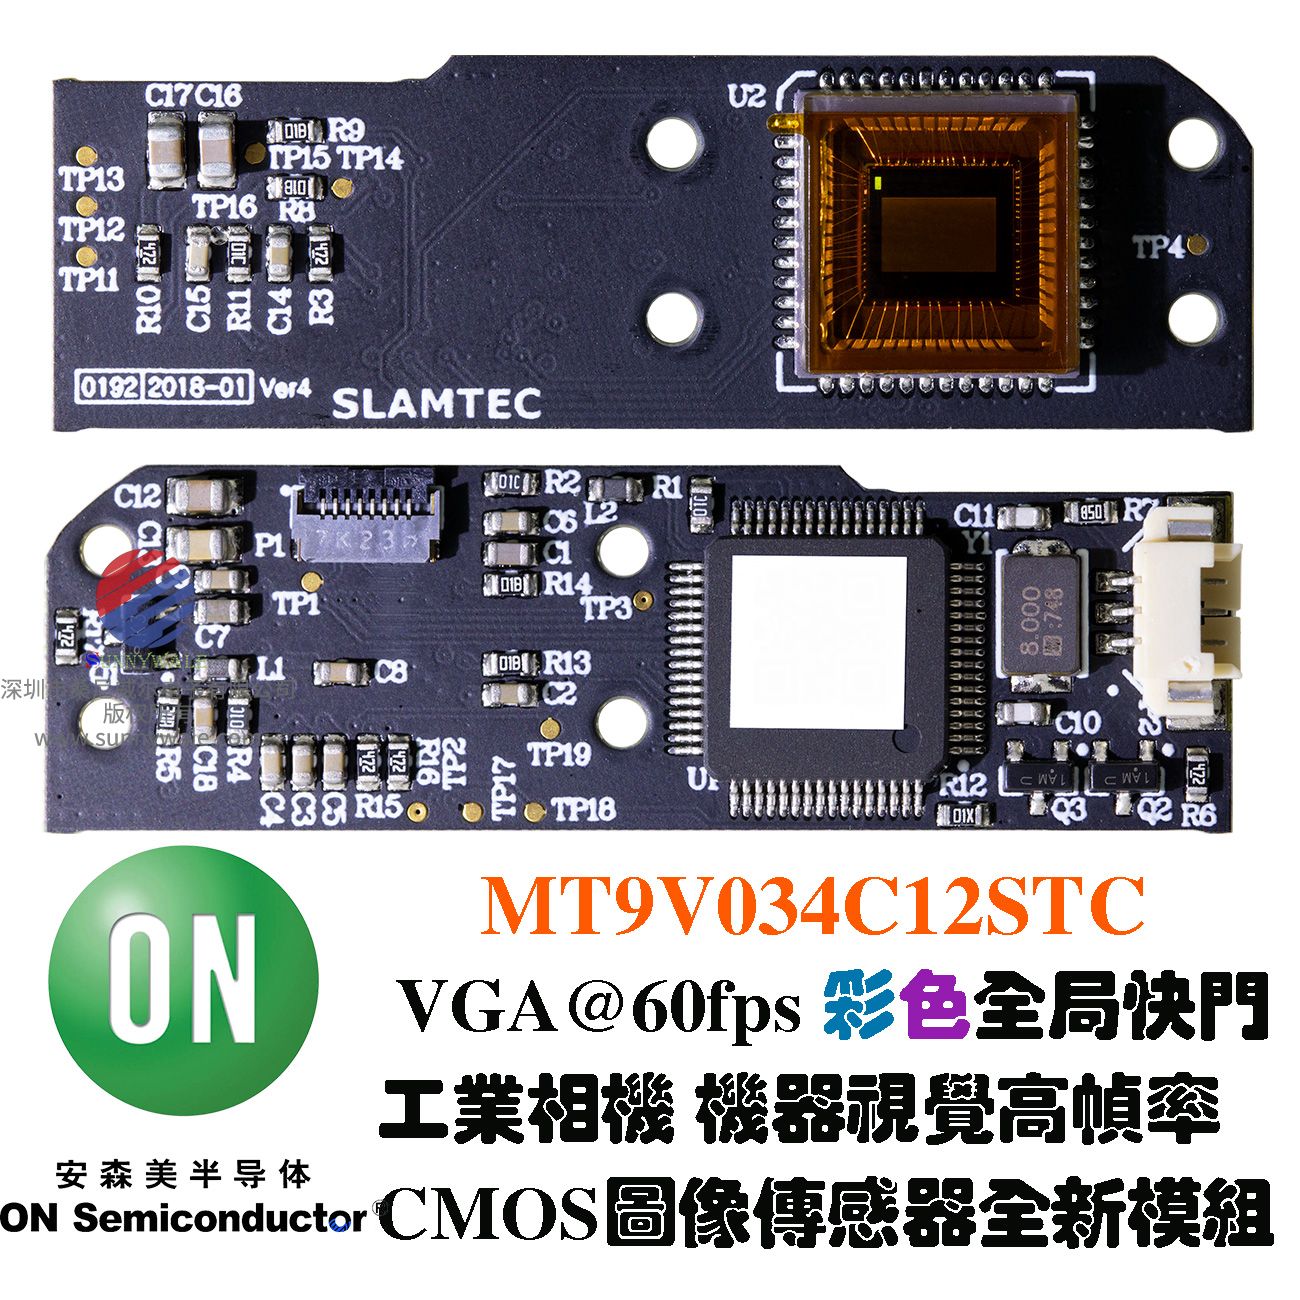 VGA大像元高帧率图像传感器